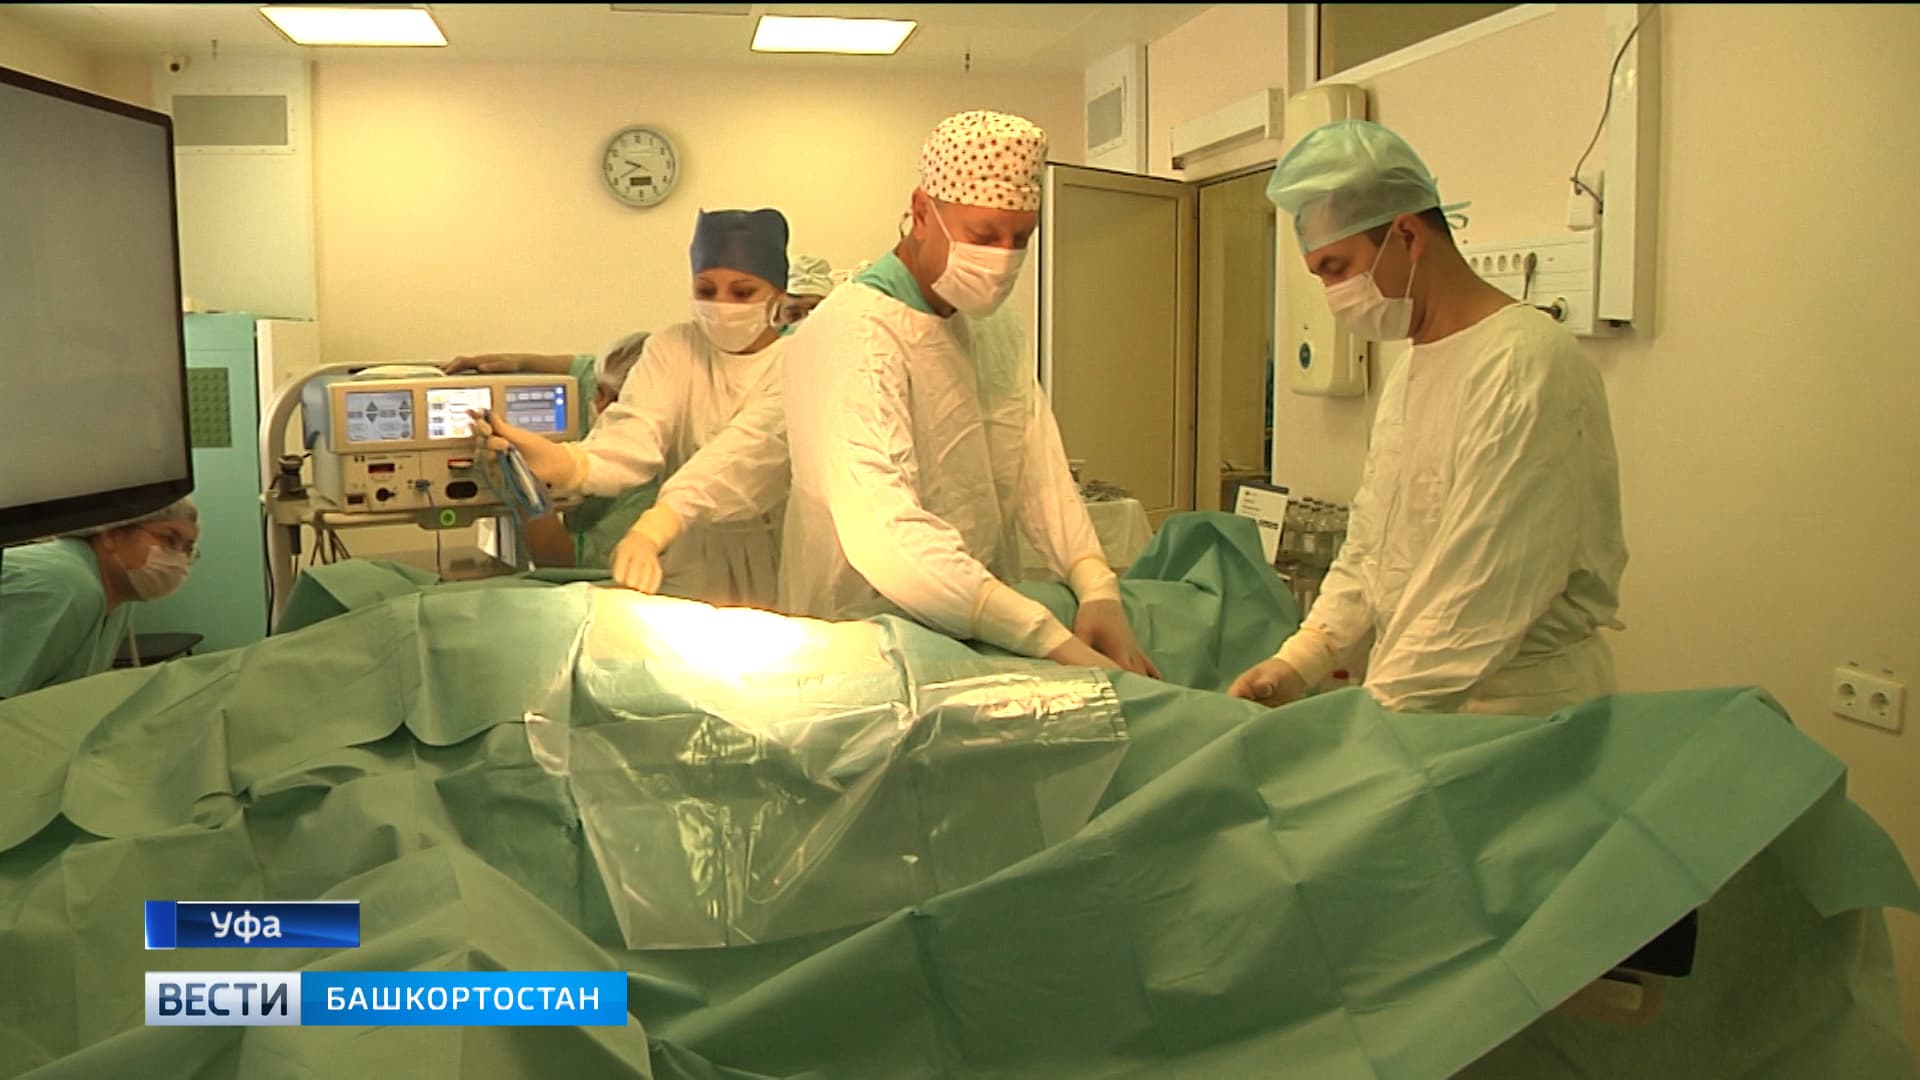 Медики уфимской клиники БГМУ провели сложнейшую операцию по удалению грыжи пищевода